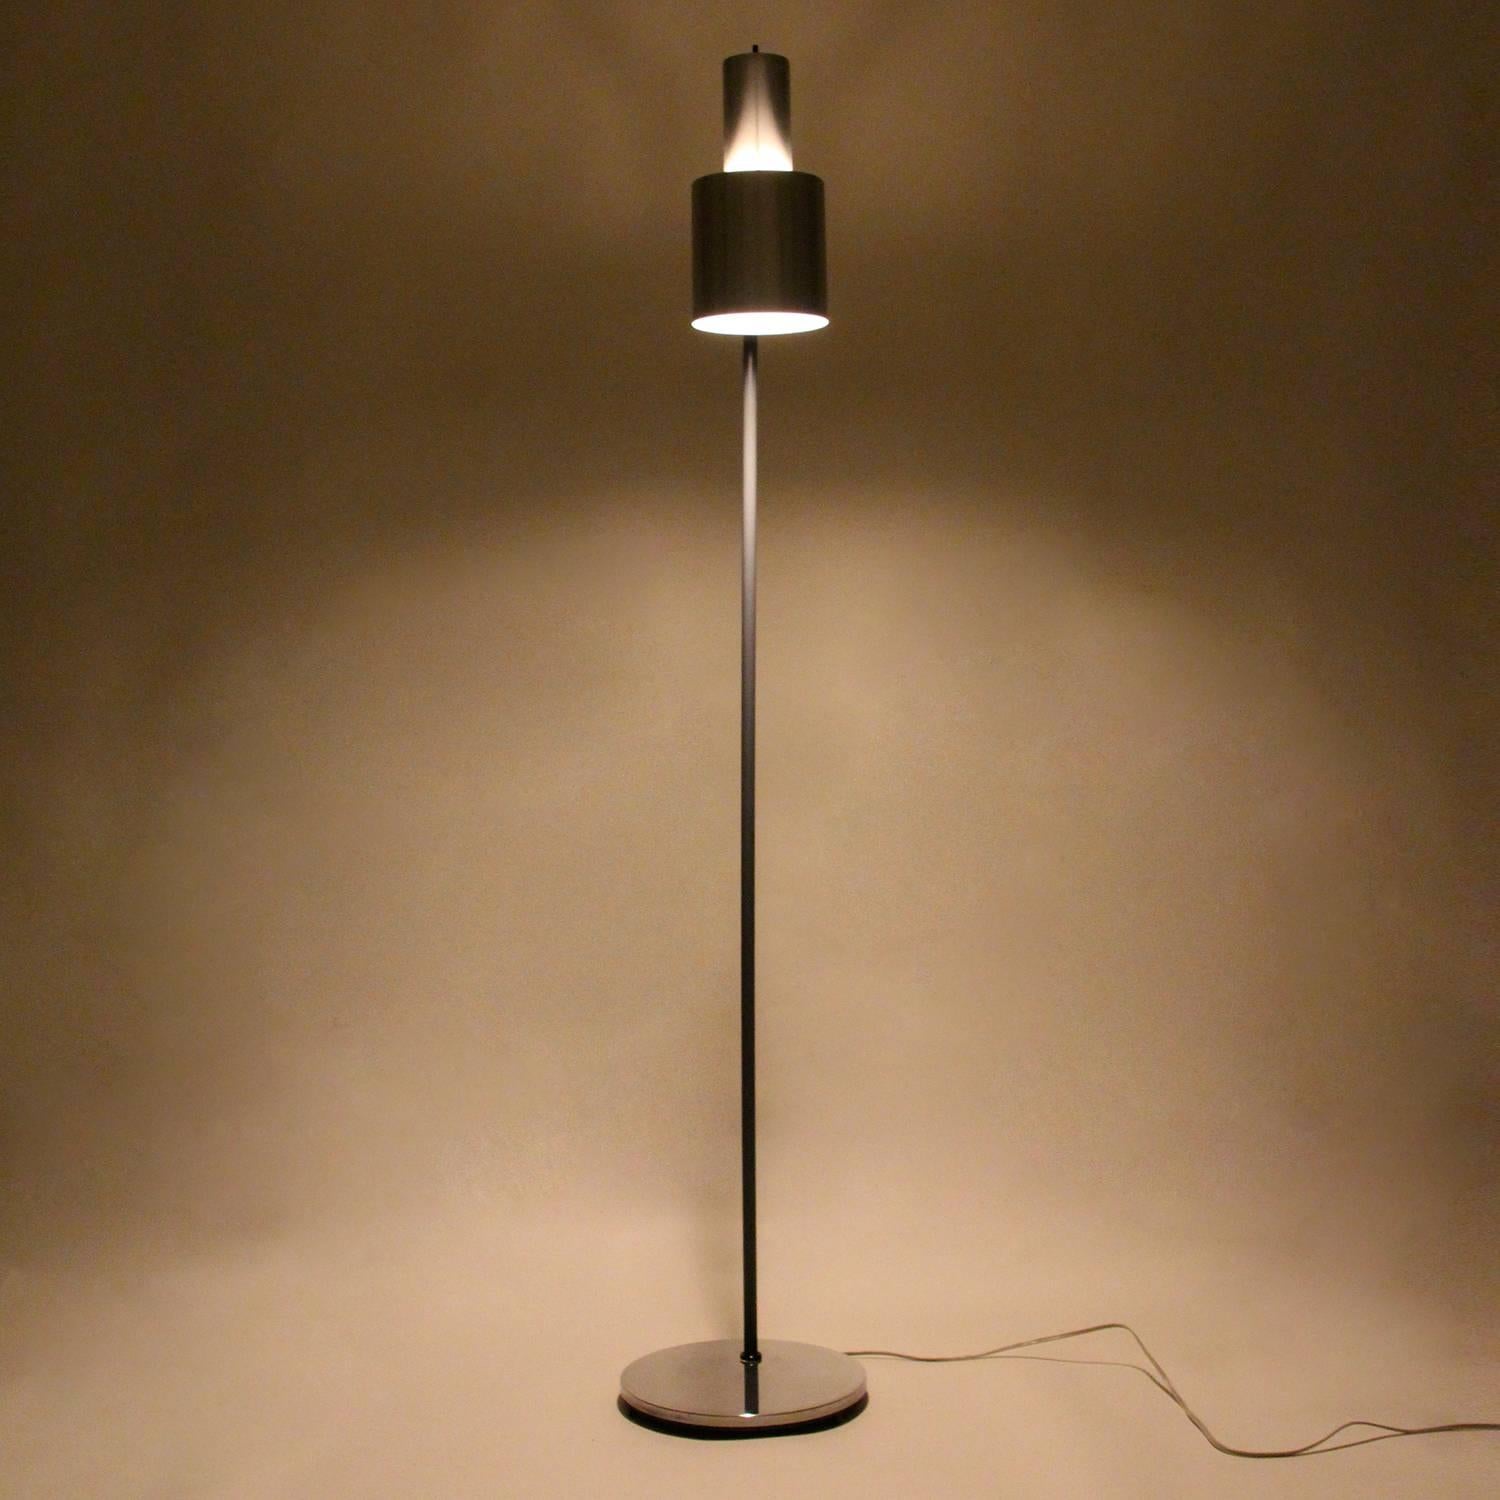 Danish Studio, Vintage Aluminum Floor Lamp by Jo Hammerborg for Fog & Mørup in 1963 For Sale